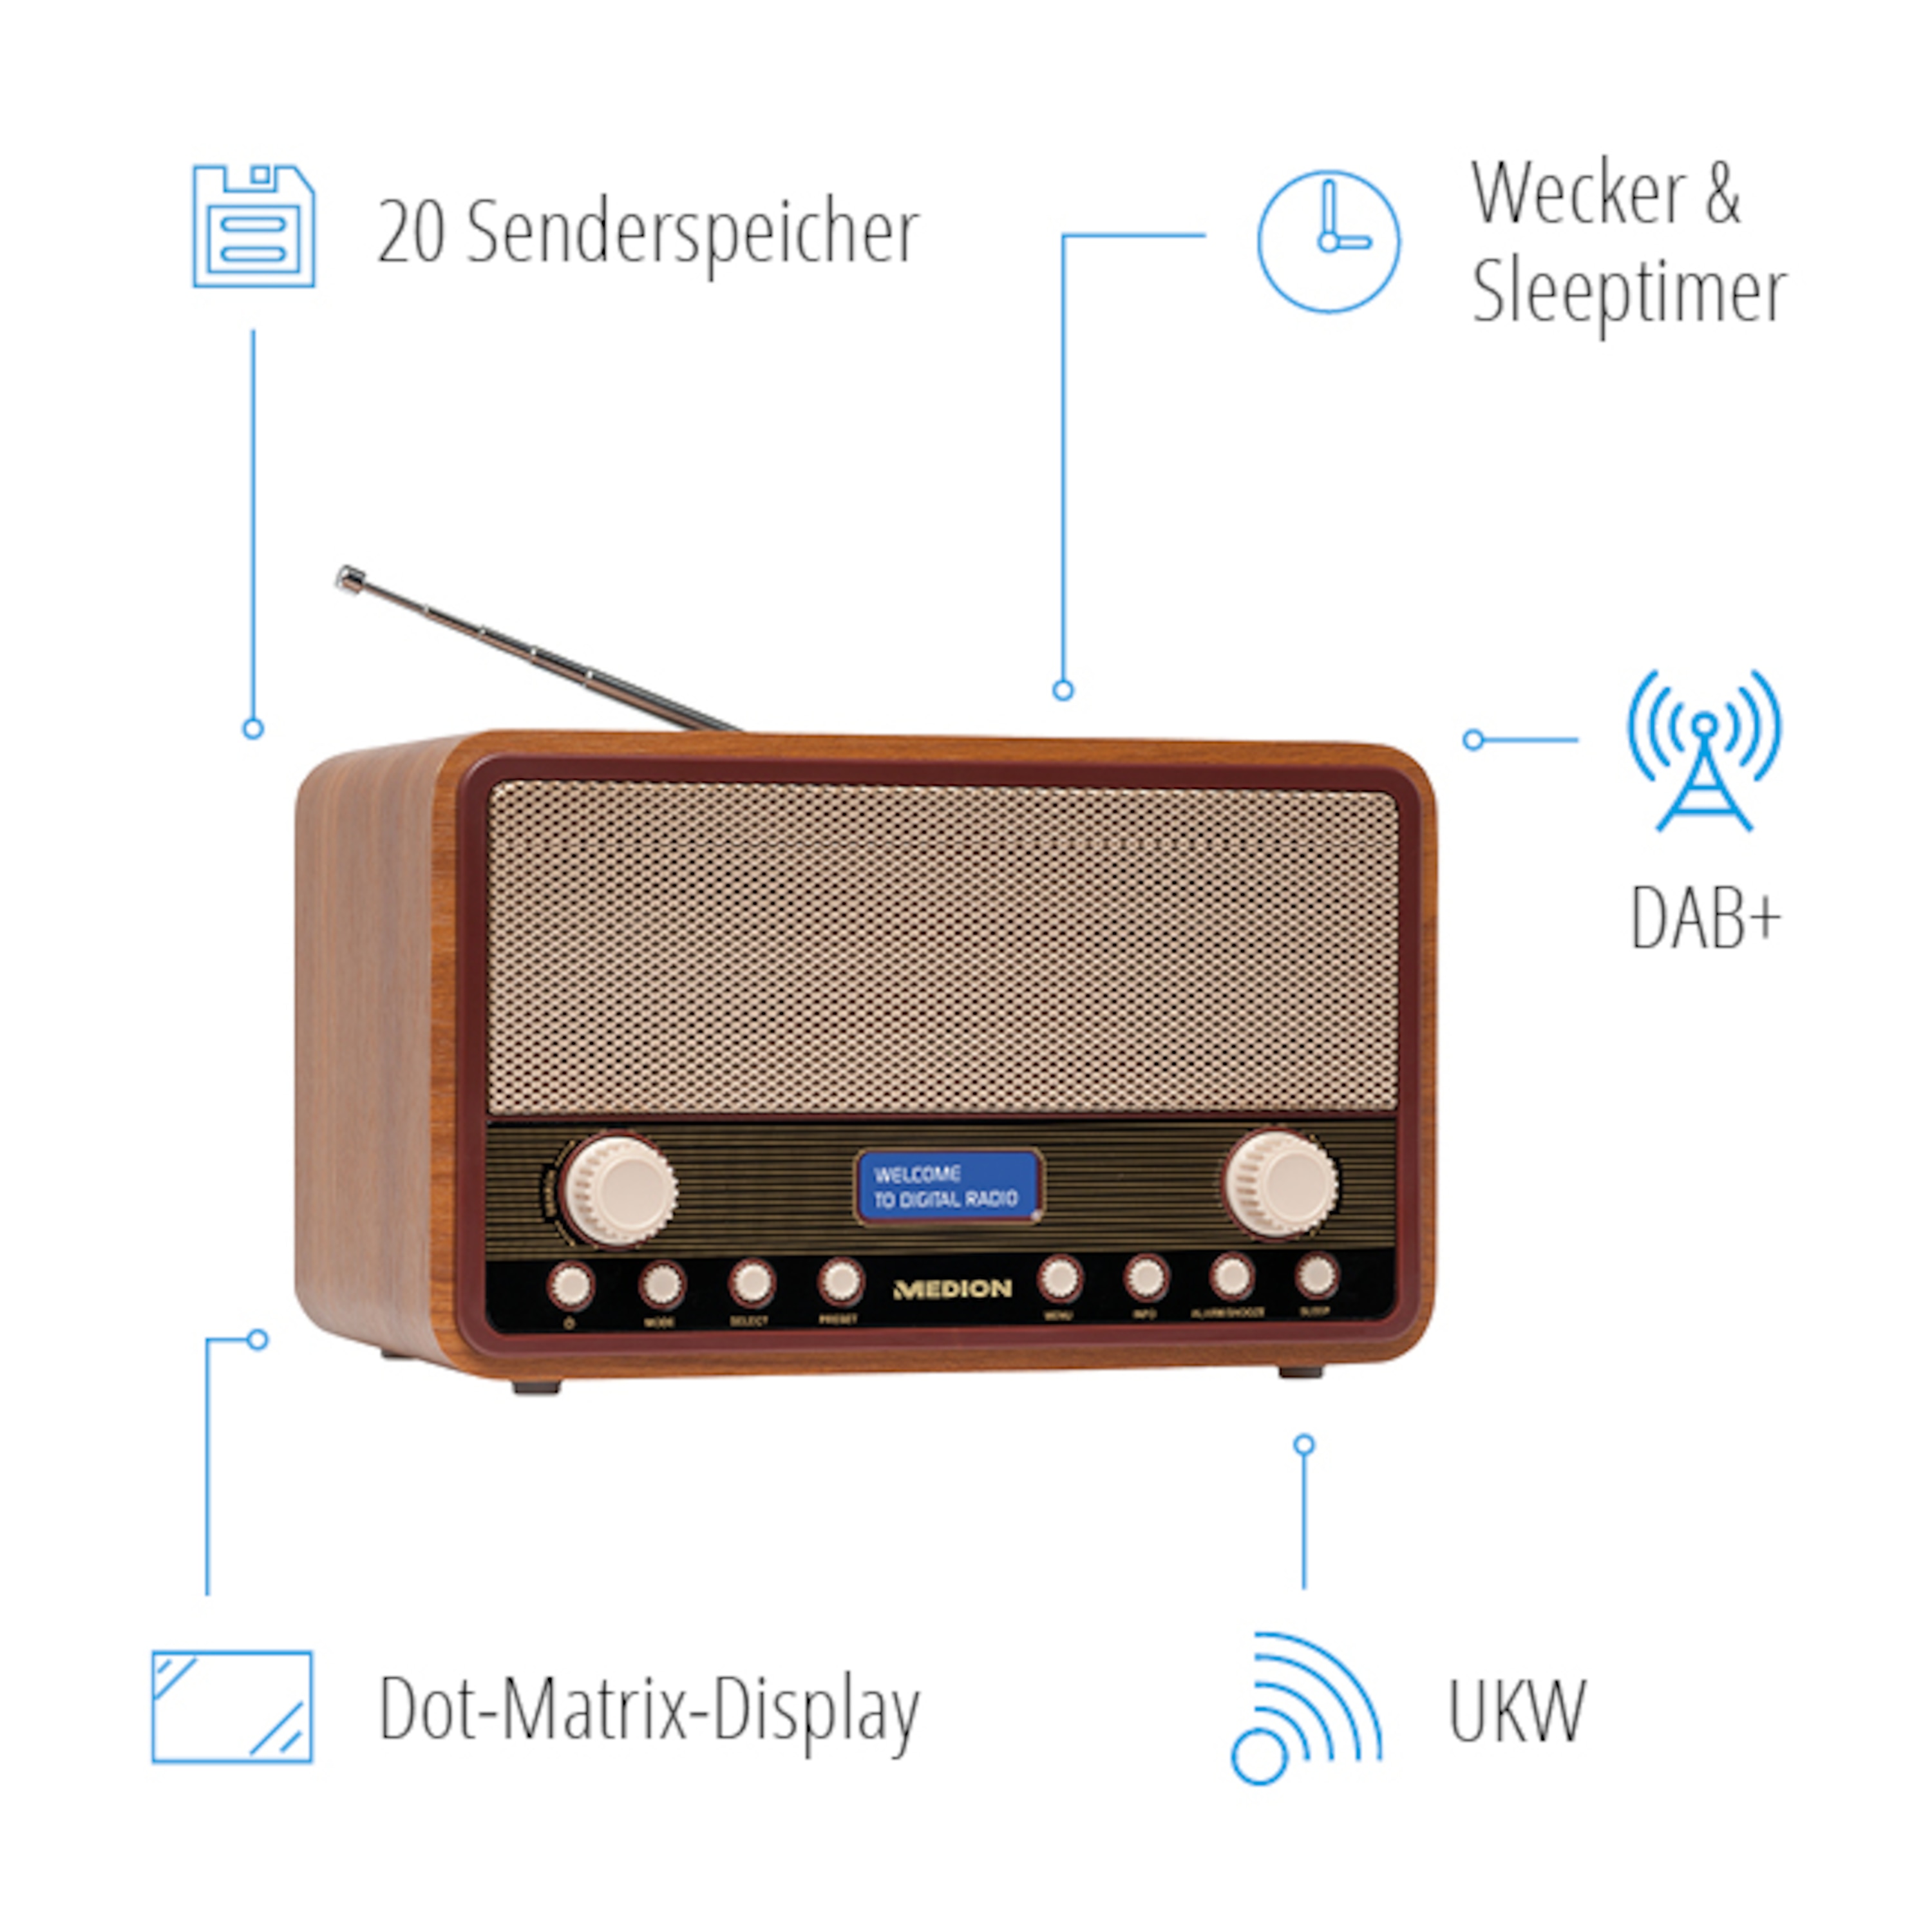 MEDION® LIFE® E66312 DAB+/UKW-Radio im Retro-Look, Dot-Matrix-Display, 20 Senderspeicher, Einschlaf- und Schlummerfunktion, 2 x 20 W max. Musikausgangsleistung